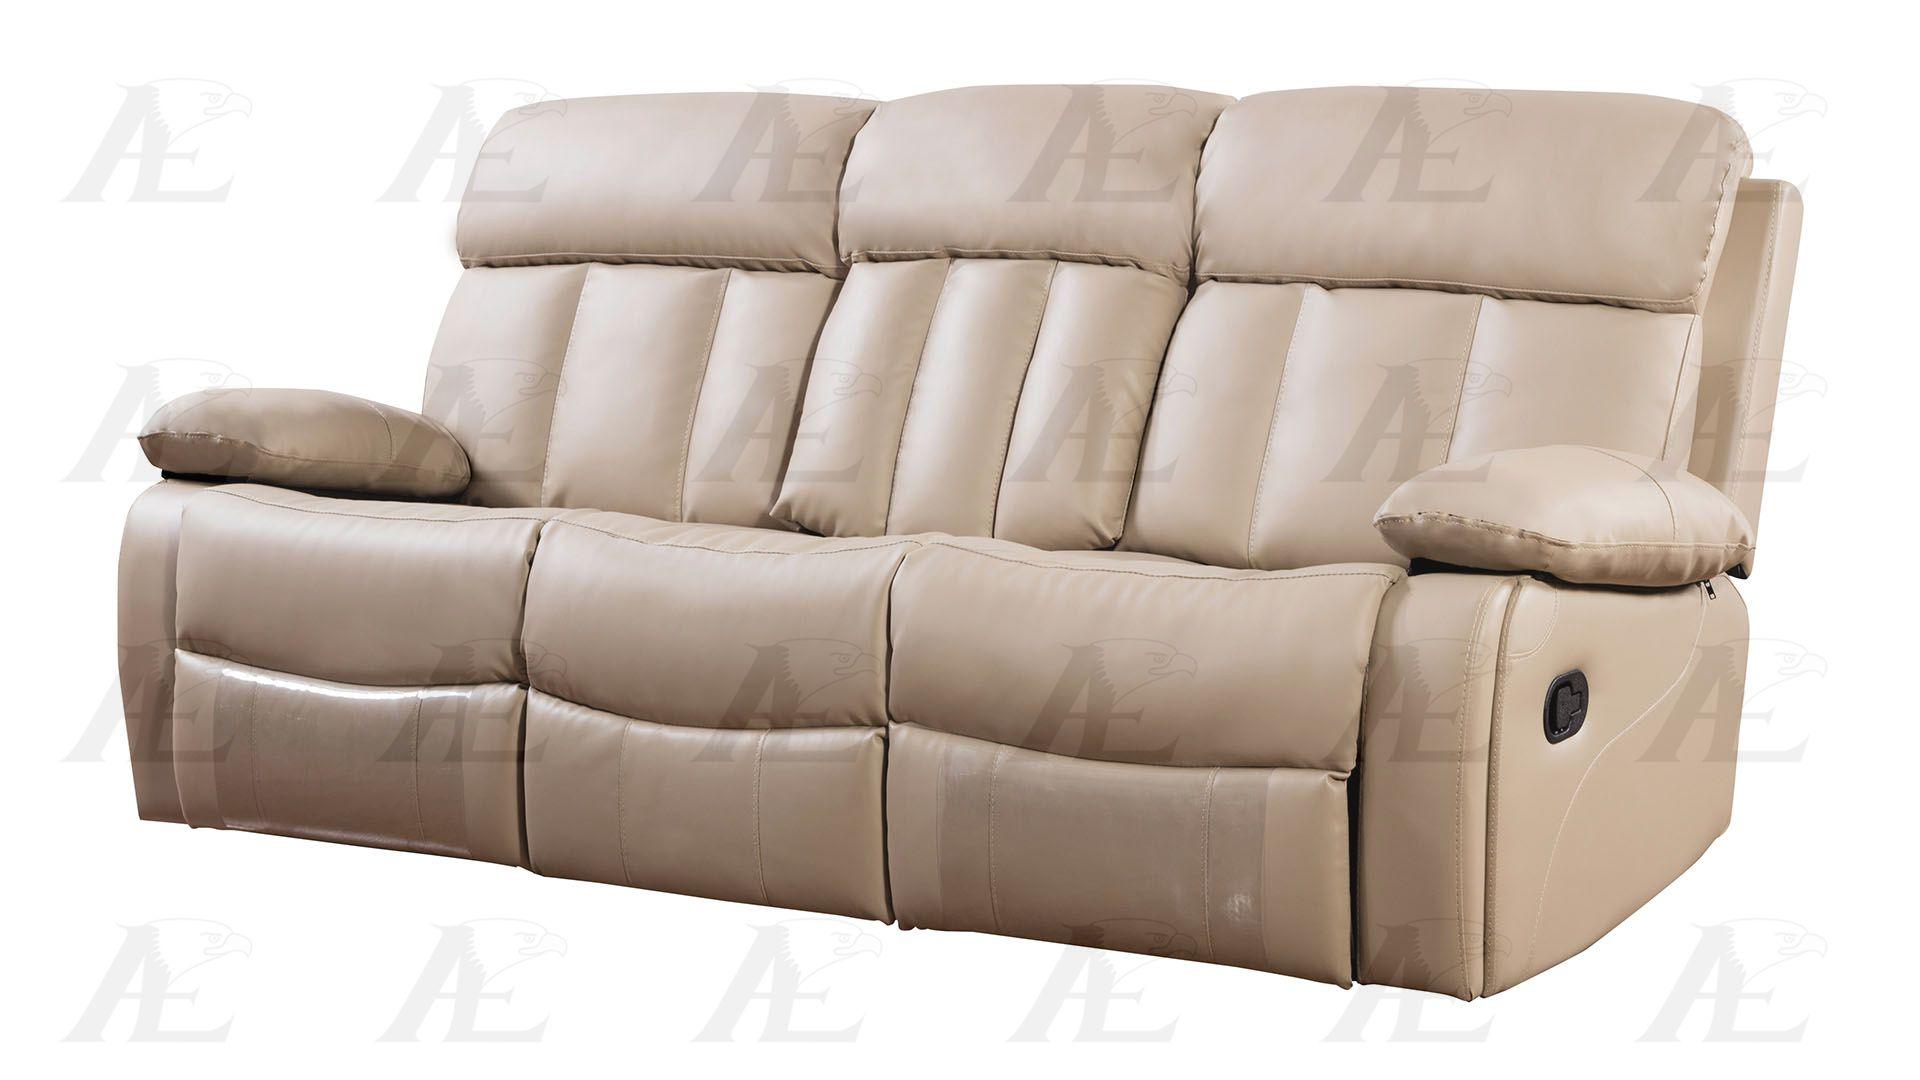 

    
American Eagle Furniture AE-D825-TAN Reclining Tan AE-D825-TAN-Set-2
